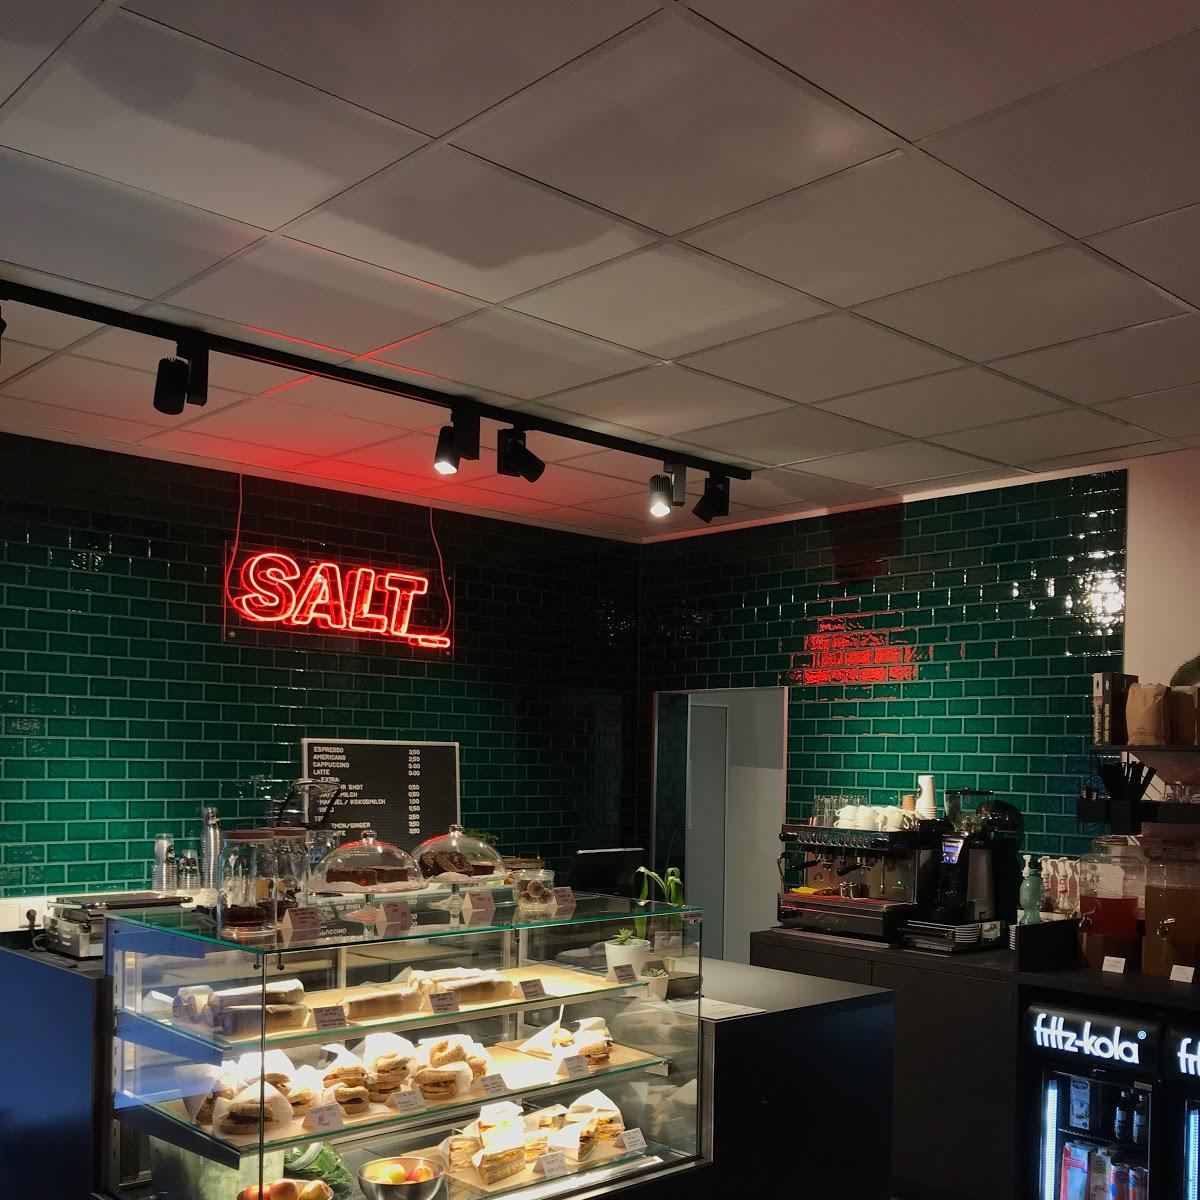 Restaurant "SALT_eatery" in Ingolstadt